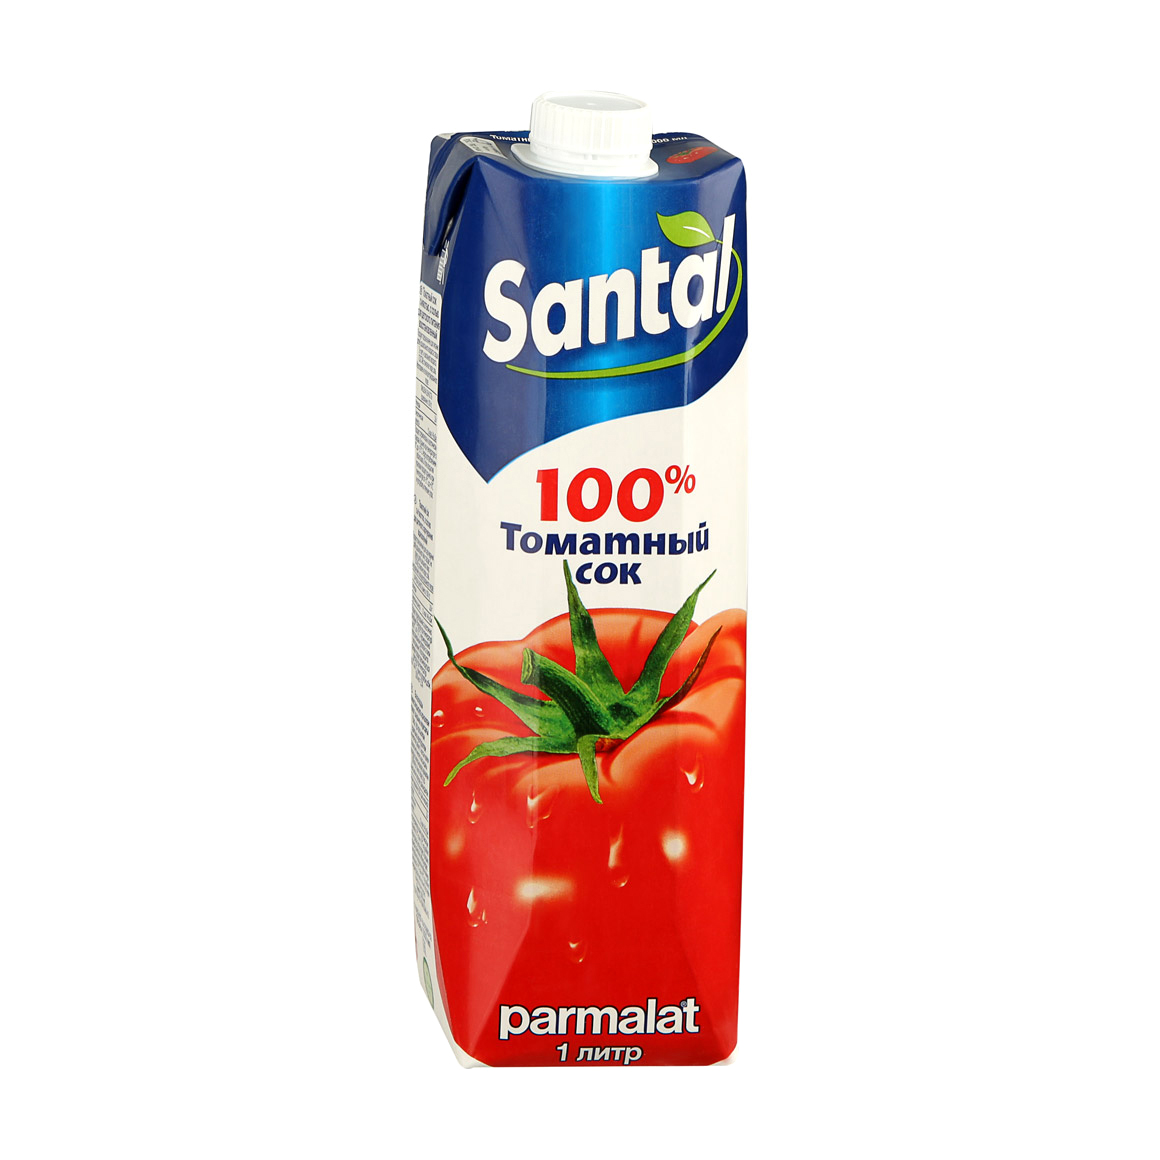 Сок Santal томатный 100% 1 л сок santal томатный 1 л